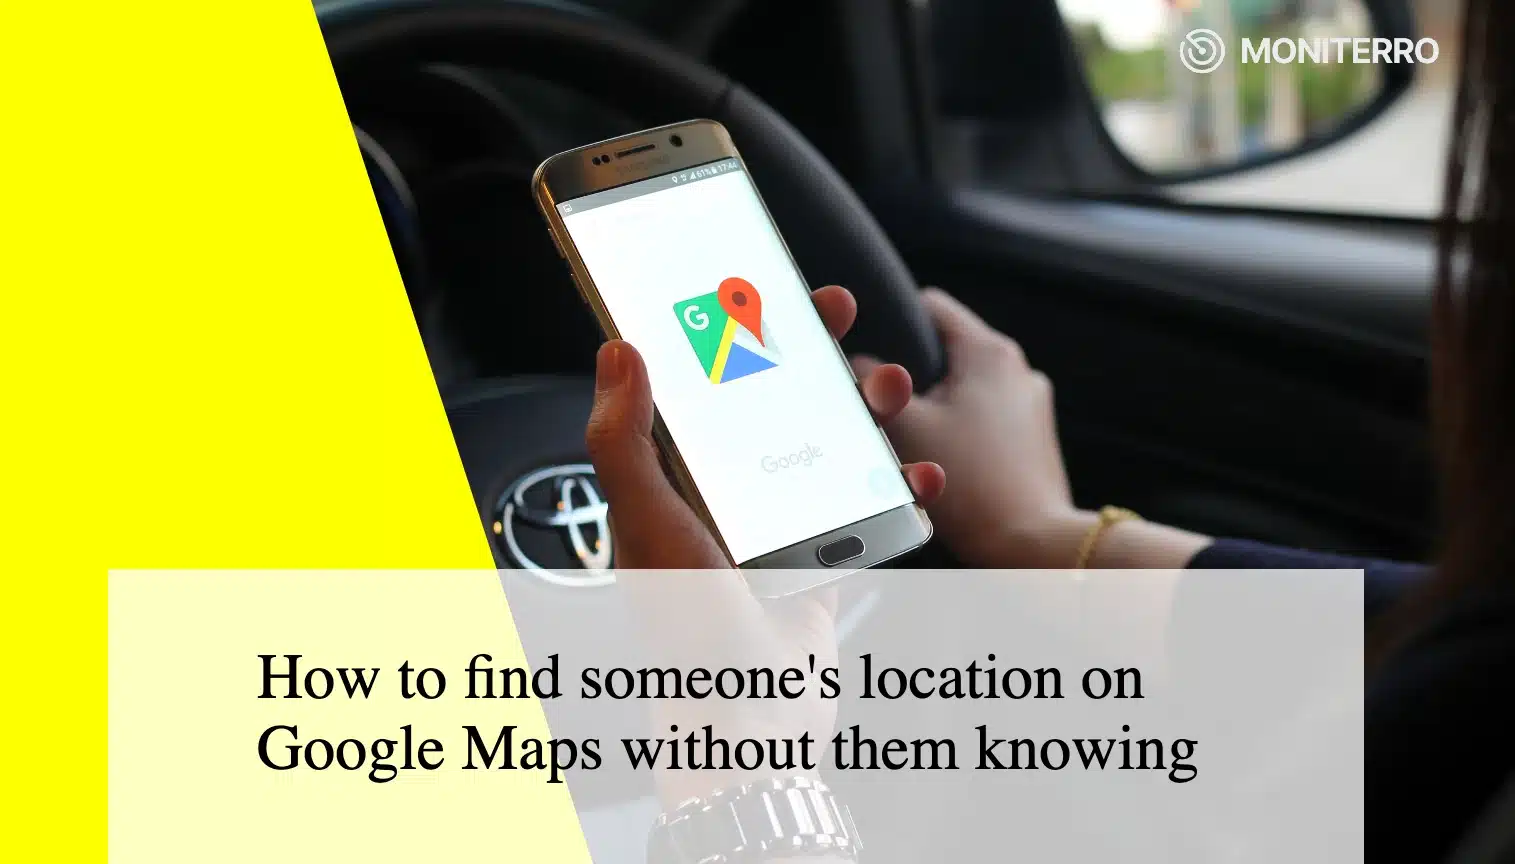 Jak zjistit polohu osoby v Mapách Google, aniž by o tom věděla?